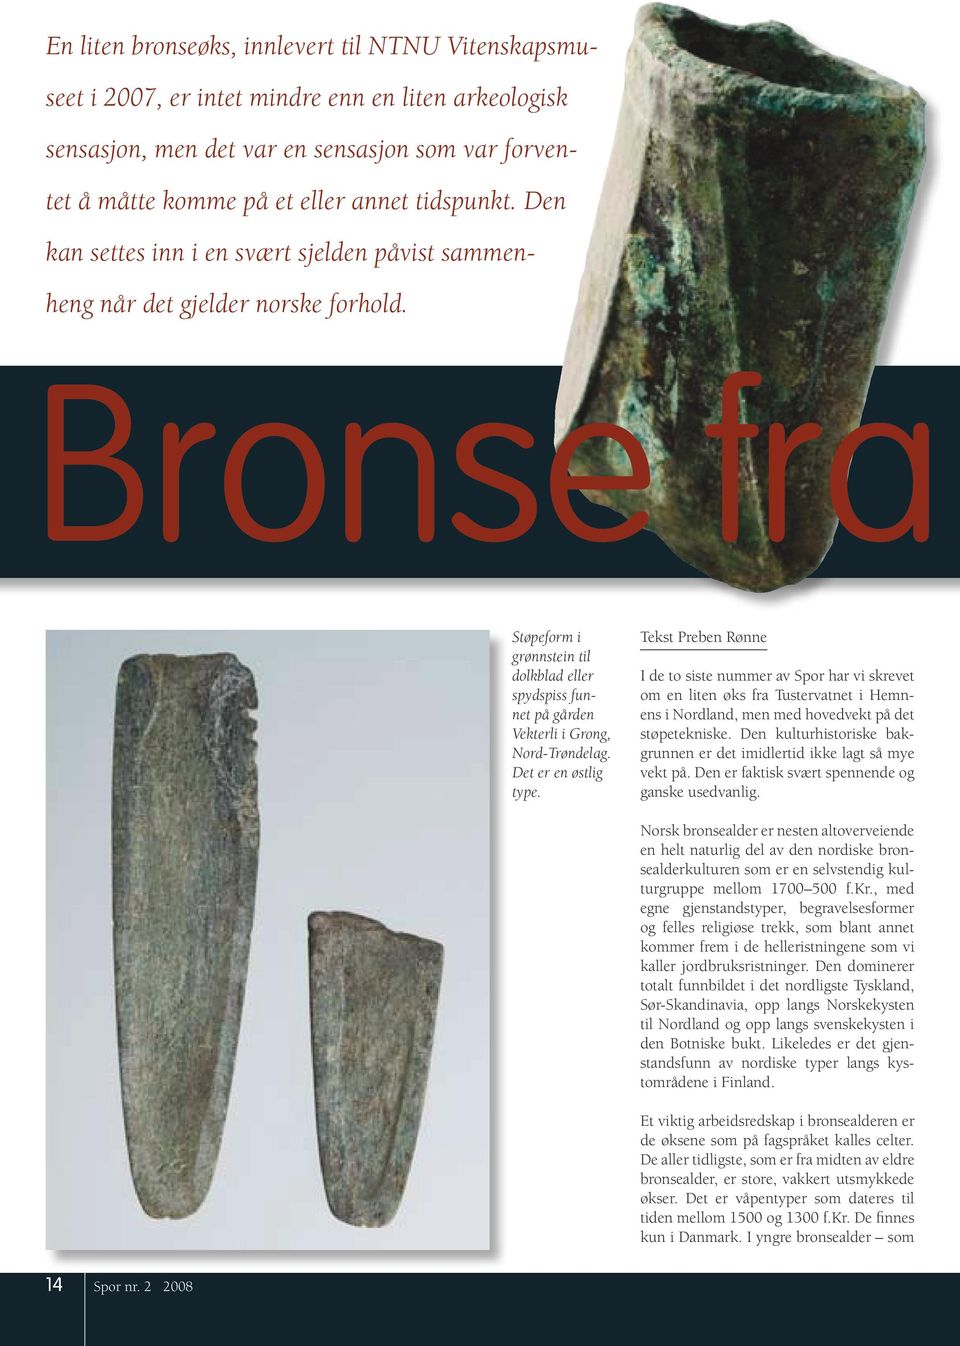 Bronse fra Støpeform i grønnstein til dolkblad eller spydspiss funnet på gården Vekterli i Grong, Nord-Trøndelag. Det er en østlig type.